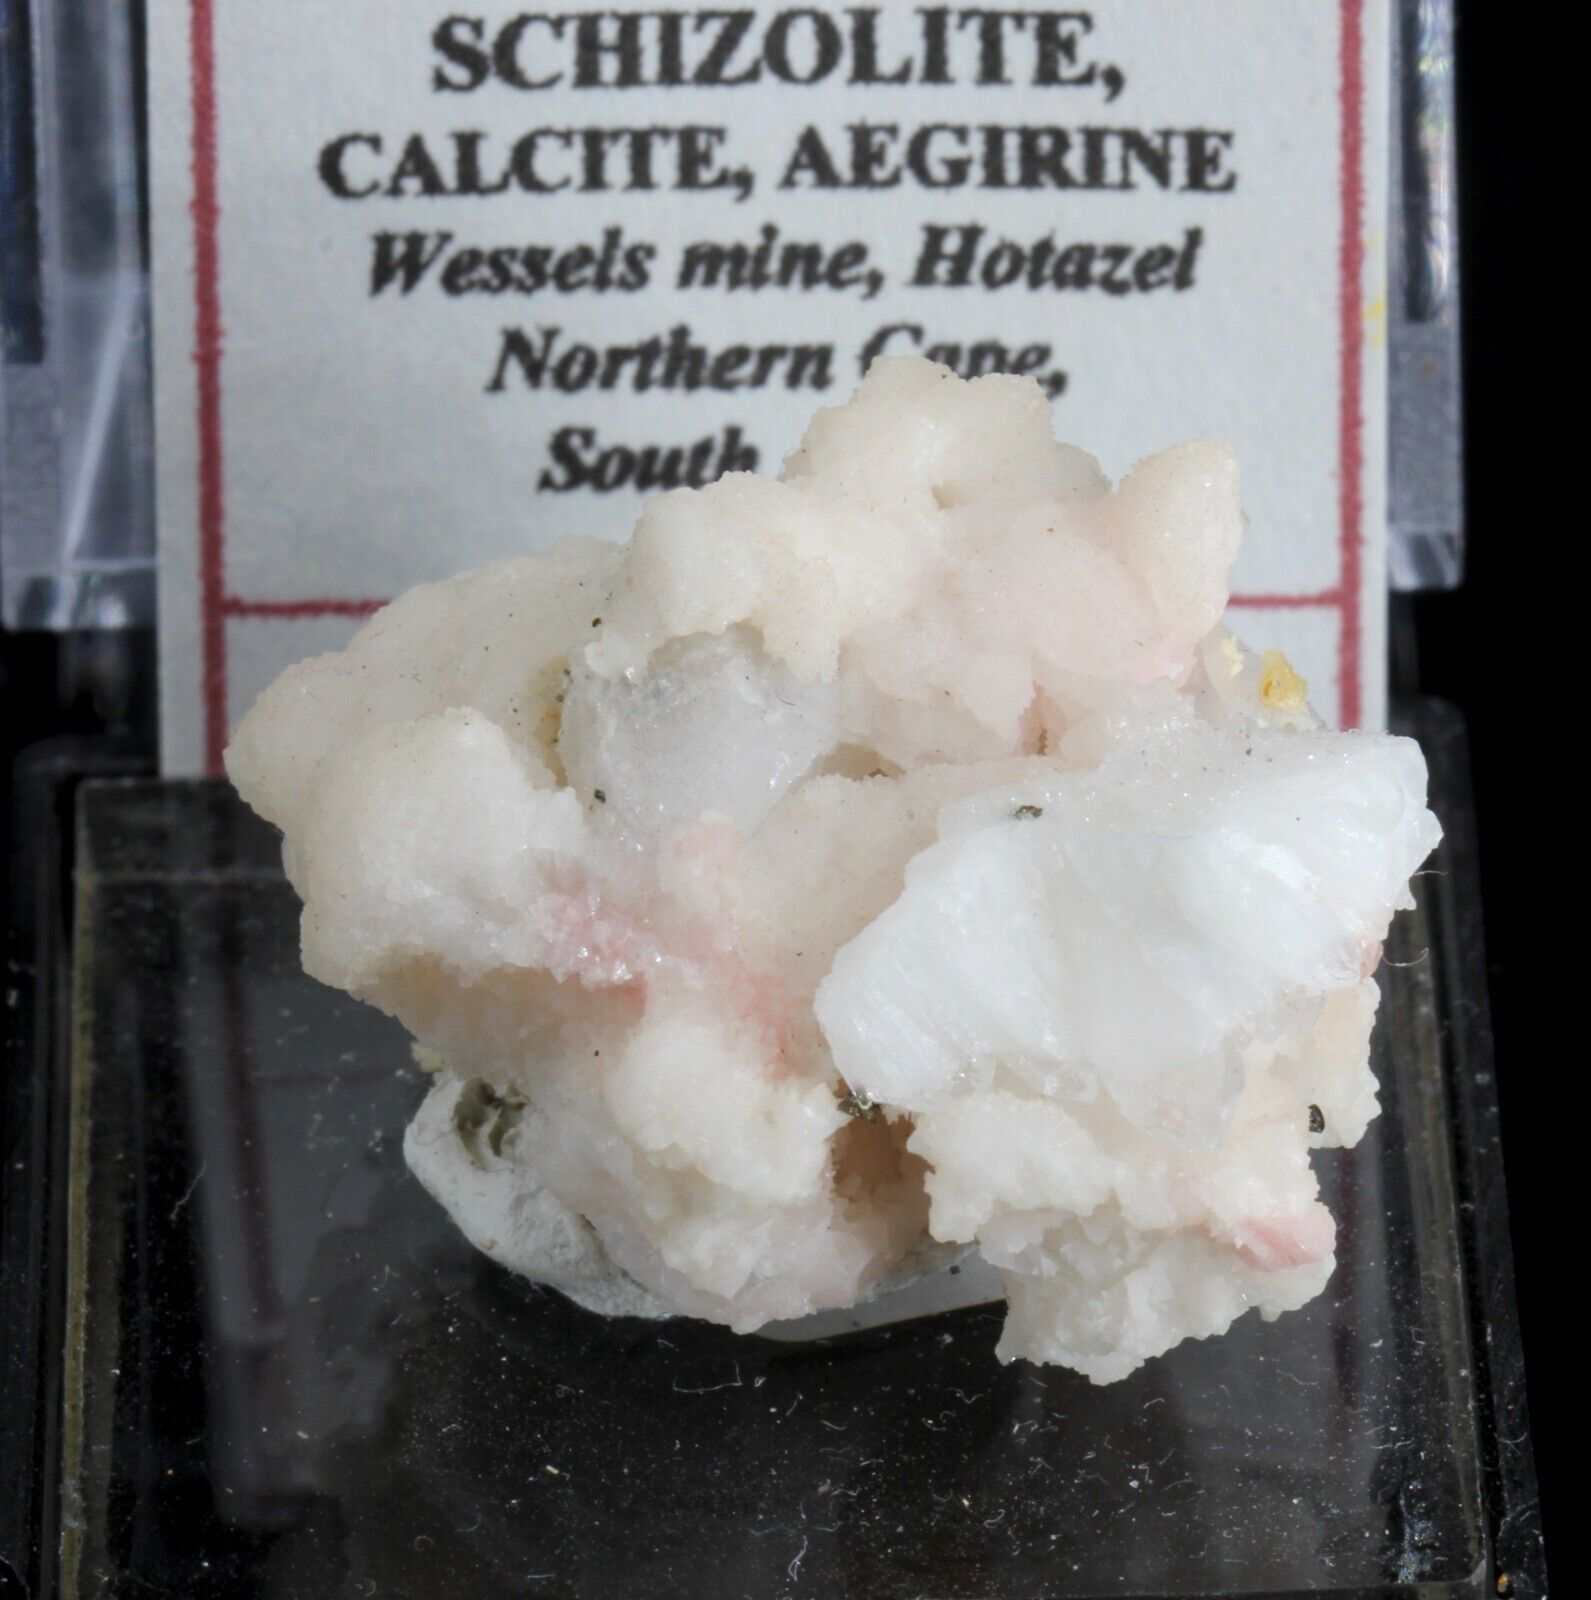 Rare Schizolite on Calcite - Wessels Mine, Hotazel, South Africa